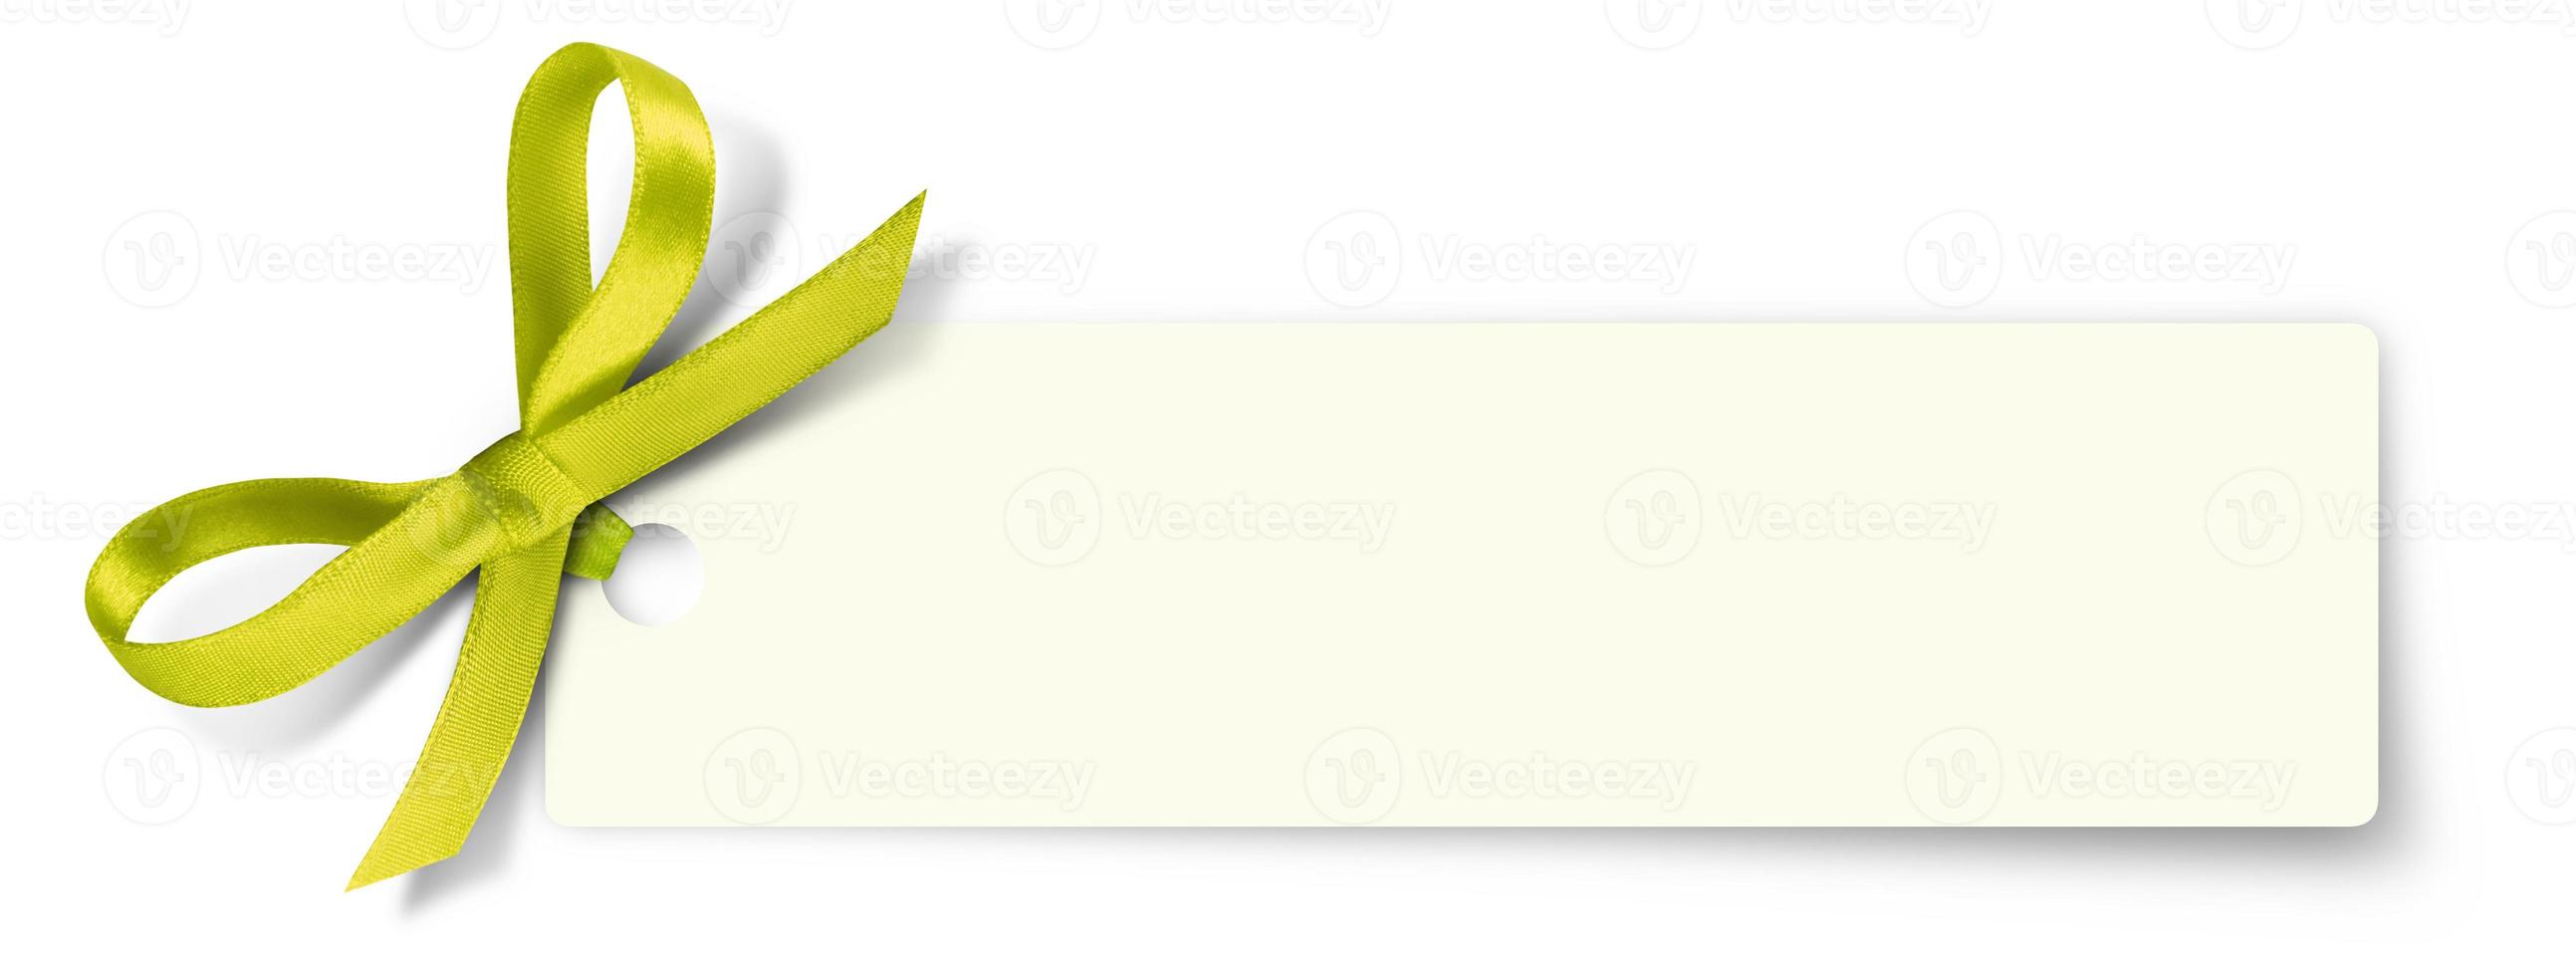 nota de cartão-presente com fita em fundo isolado foto